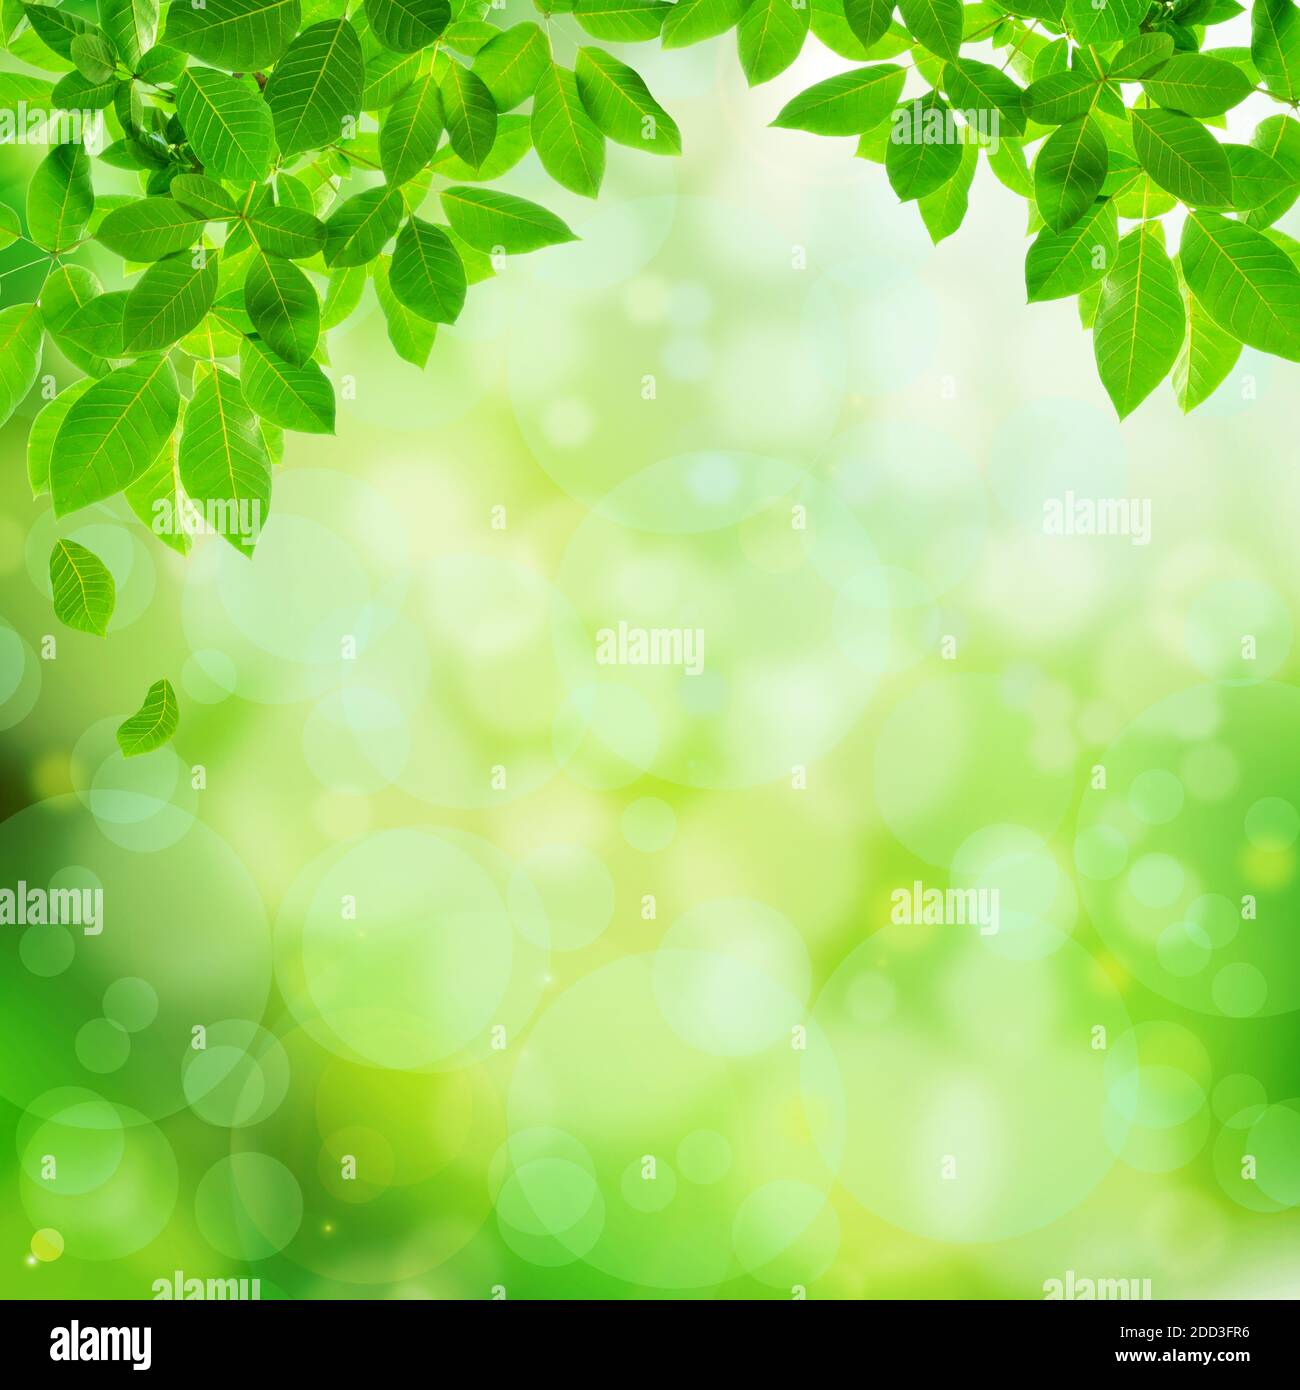 Nền xanh lá cây với lá cành bokeh là một lựa chọn tuyệt vời để làm nền cho bức ảnh của bạn. Sự pha trộn giữa màu xanh lá cây và bokeh tạo ra một cảm giác thư giãn nhẹ nhàng, mang tới cho người xem cảm giác yên bình và thoải mái. Bấm vào đây để xem những mẫu hình có nền xanh lá cây với lá cành bokeh đẹp nhất.